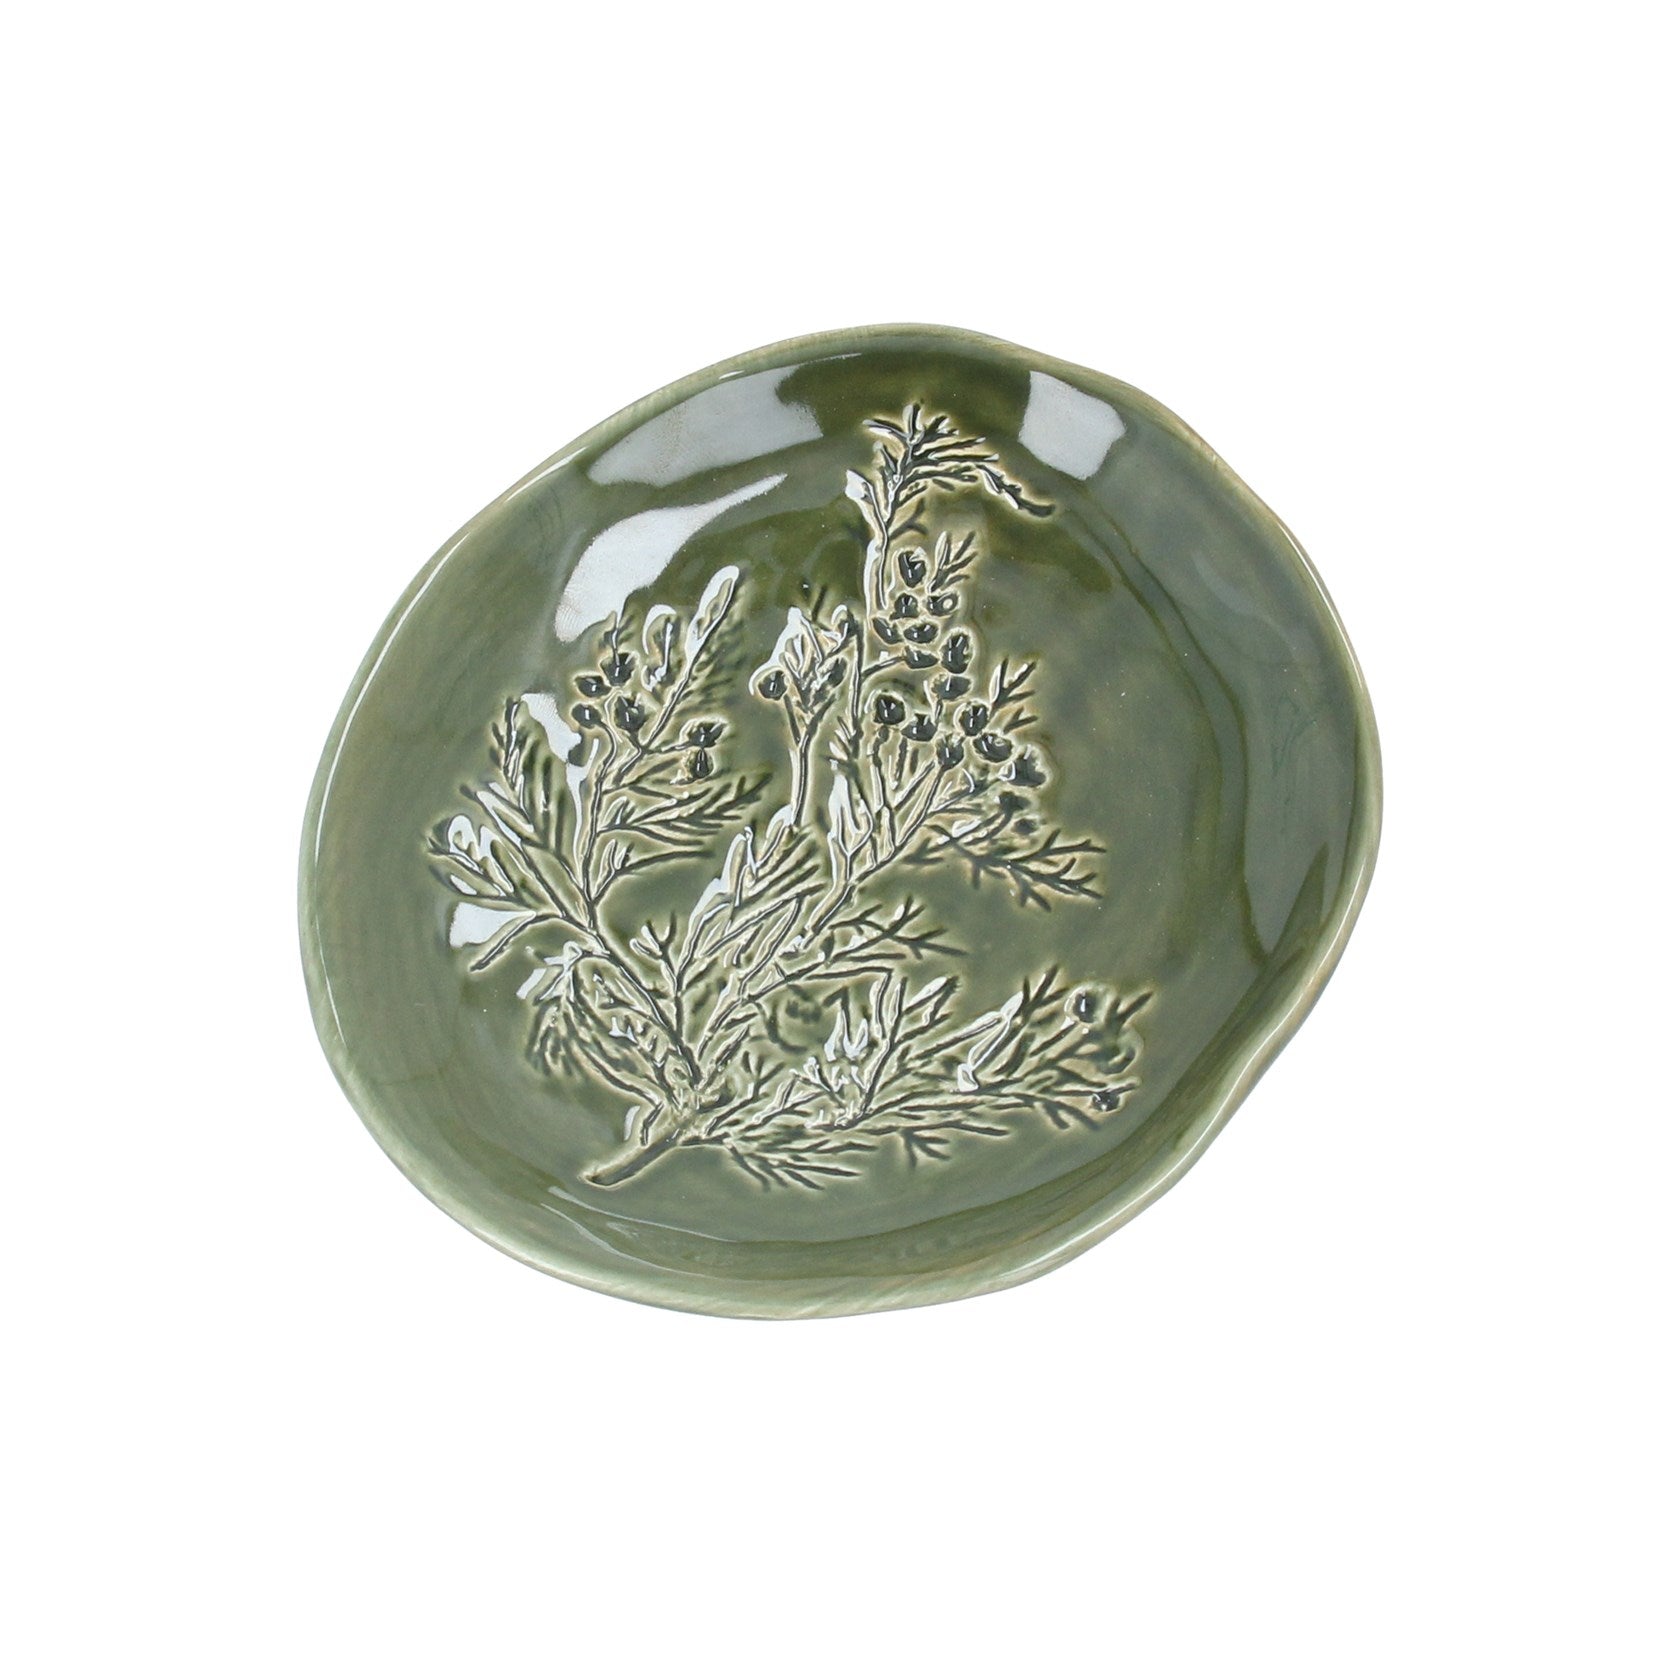 Green earthenware dill flower trinket plate